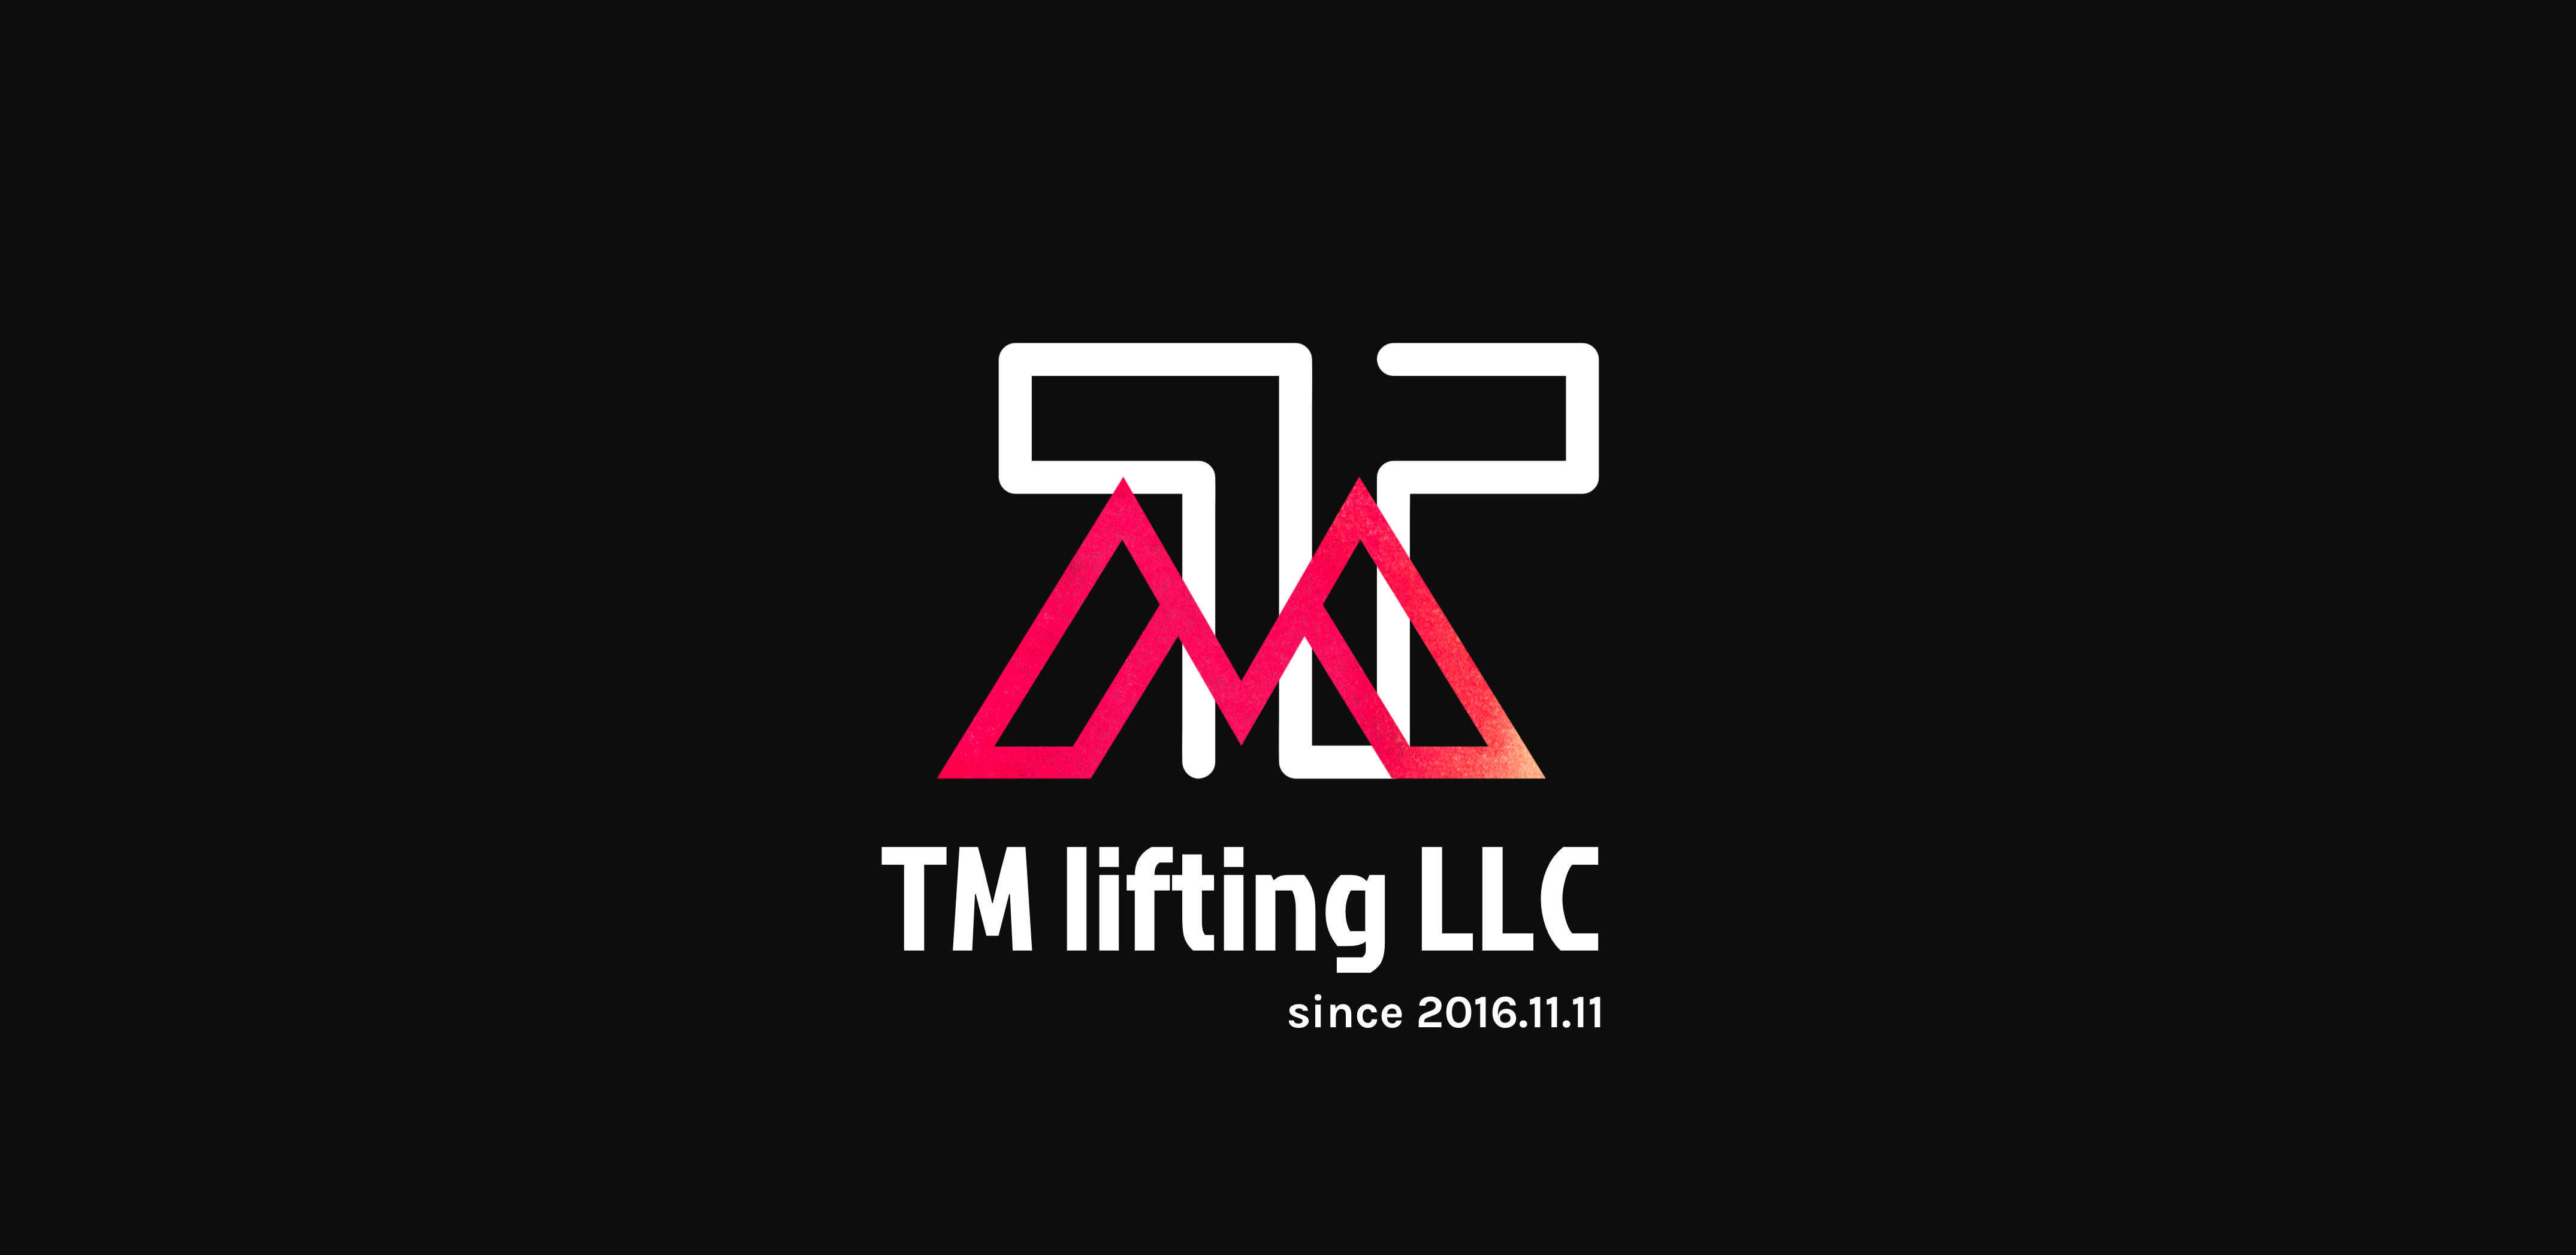 TM lifting LLC